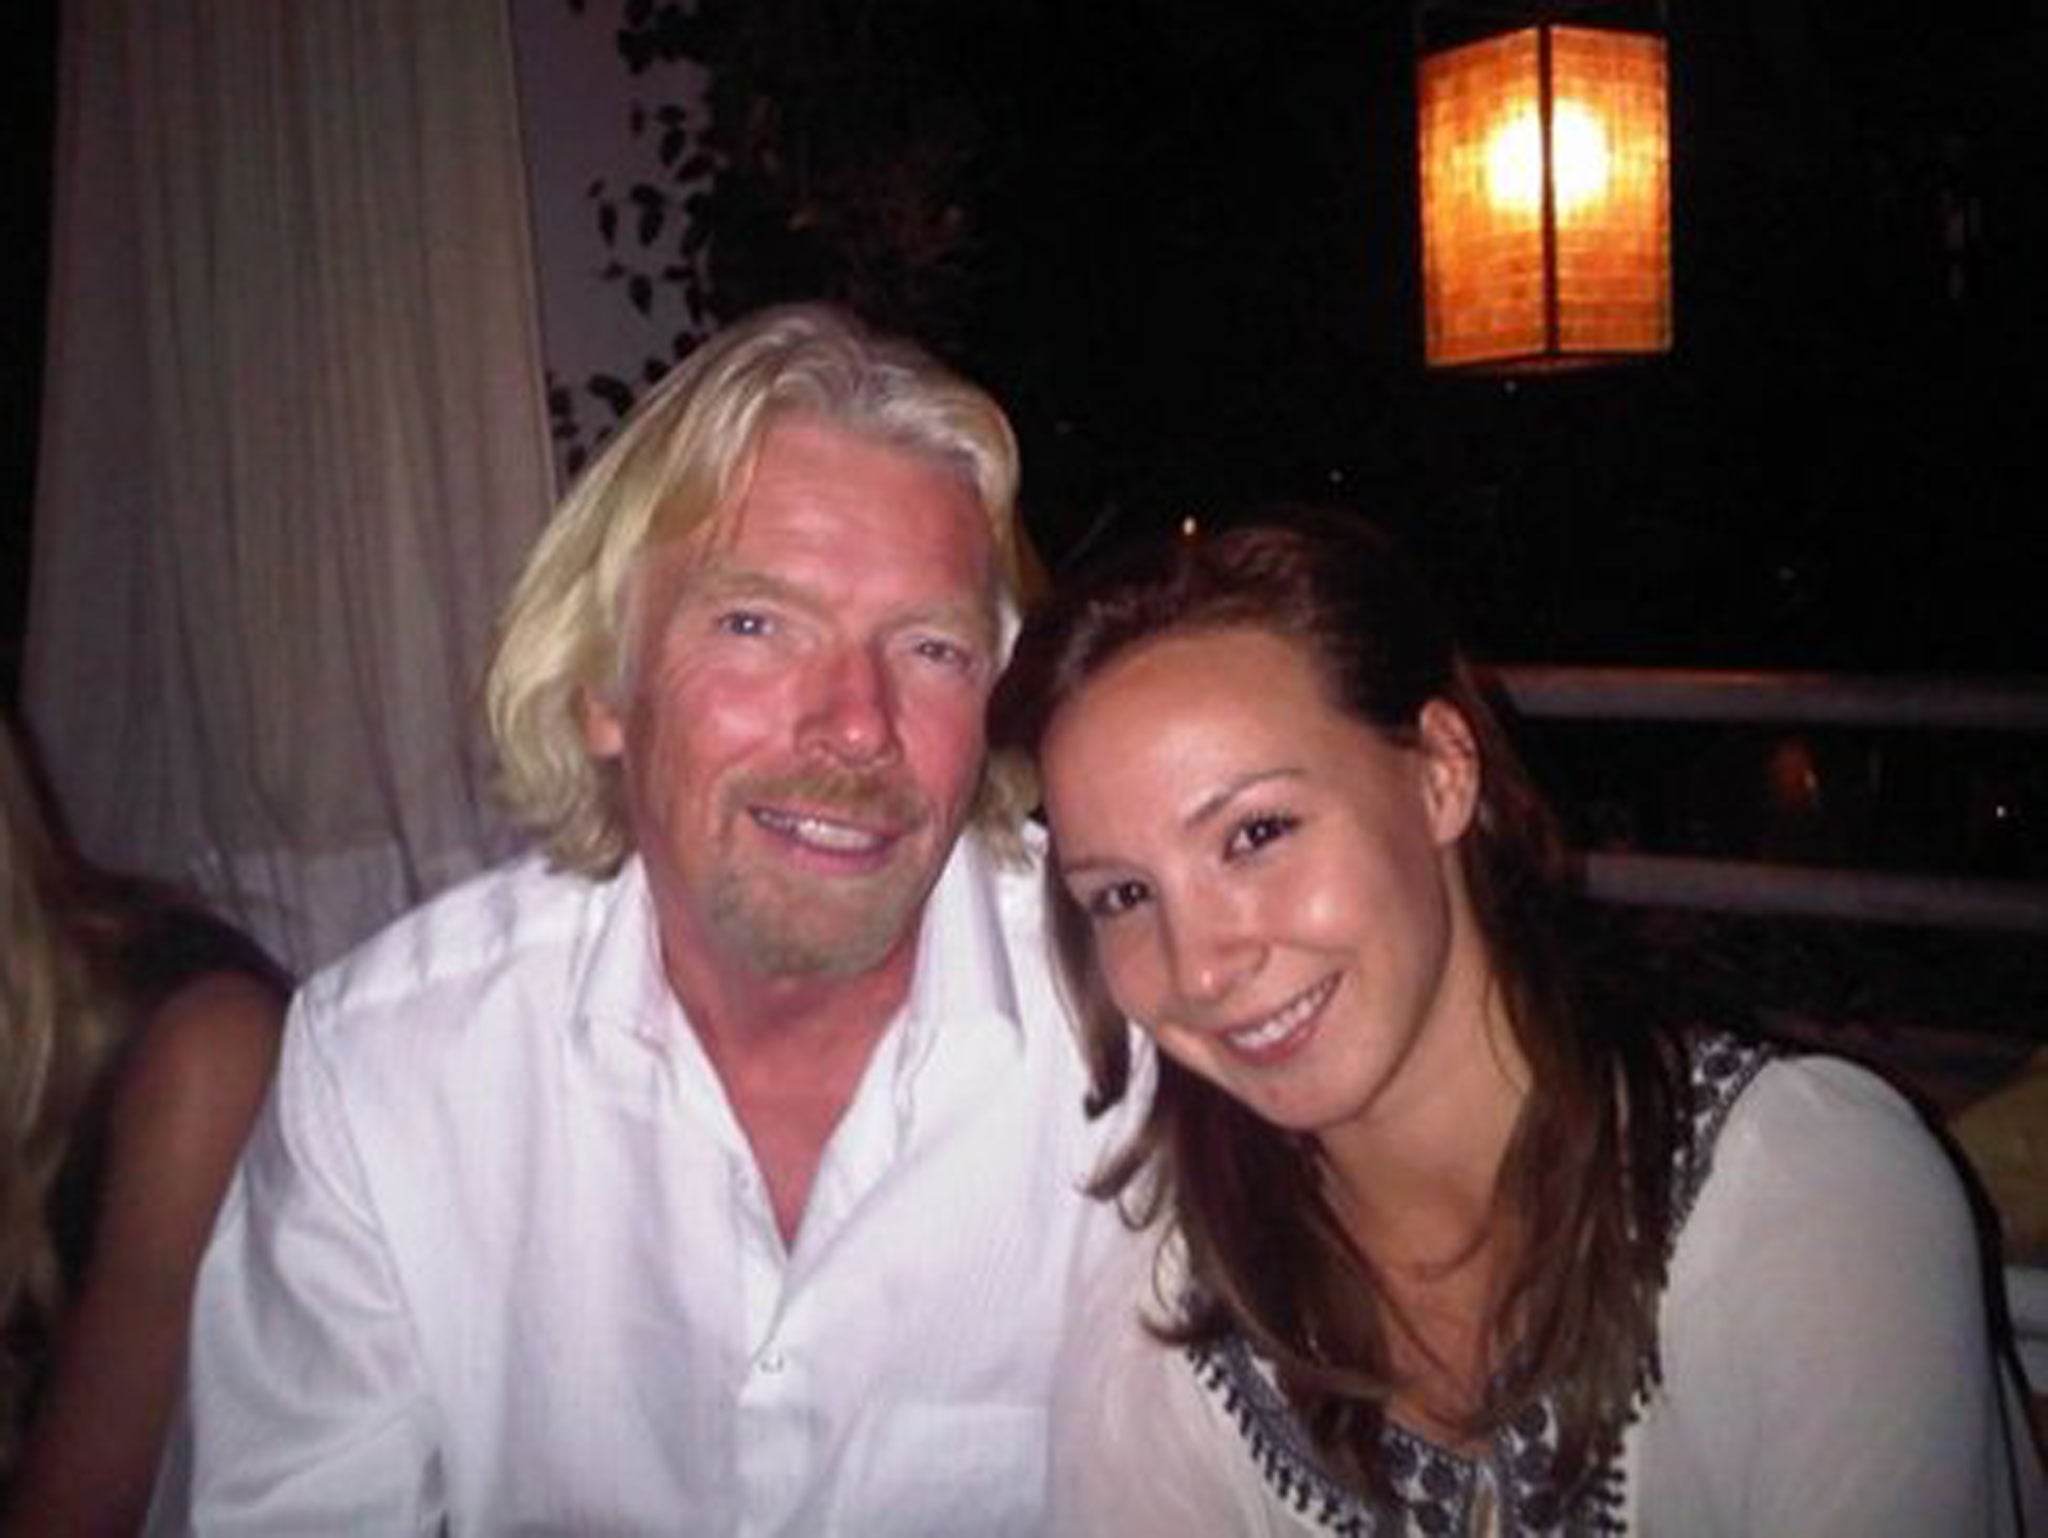 Autumn Radtke poses next to Virgin founder Richard Branson